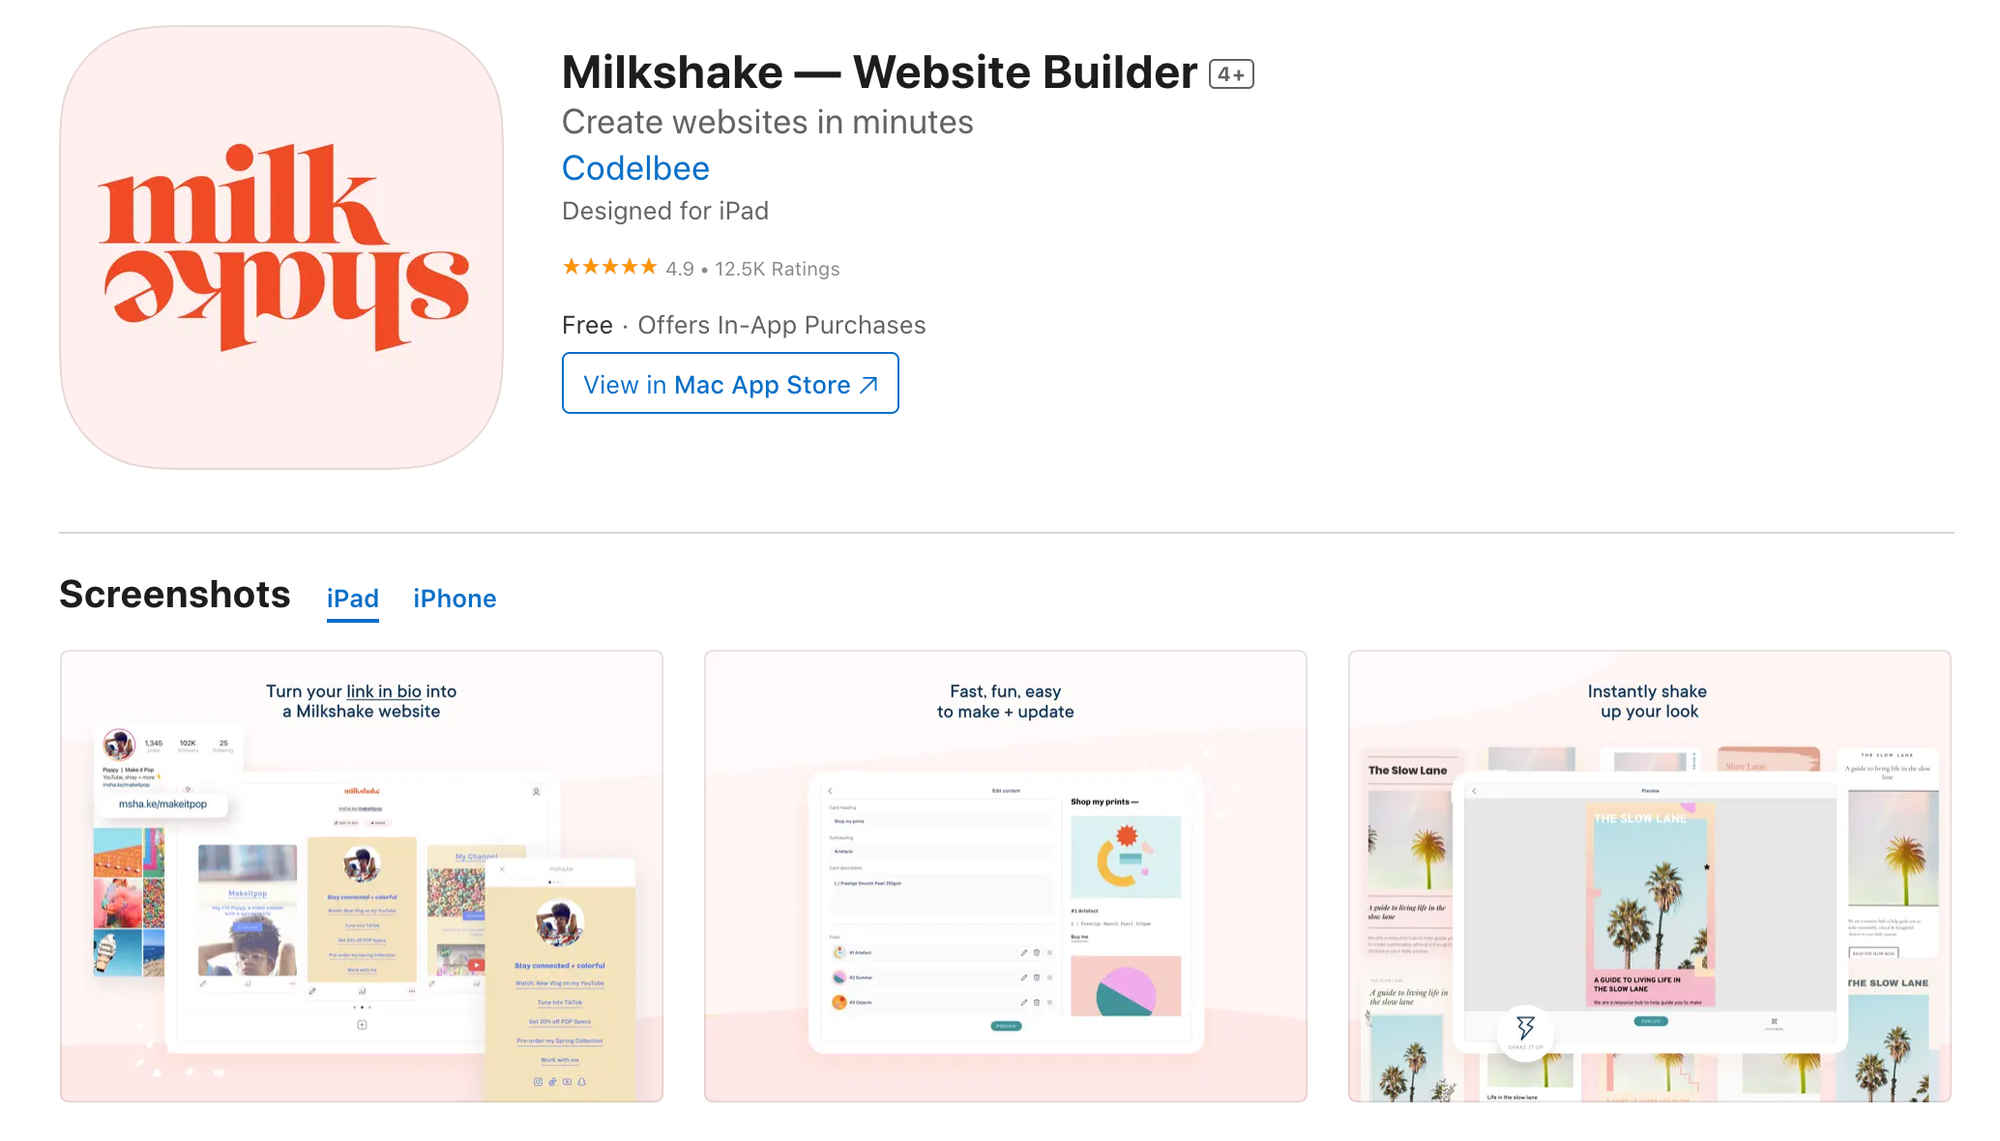 Milkshake website builder on the App Store